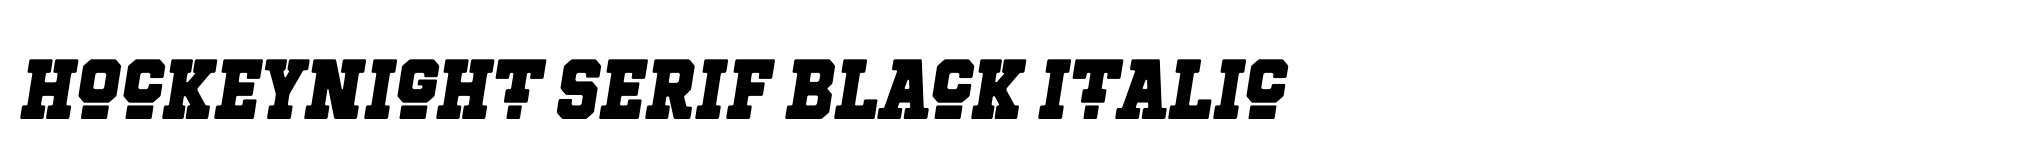 Hockeynight Serif Black Italic image